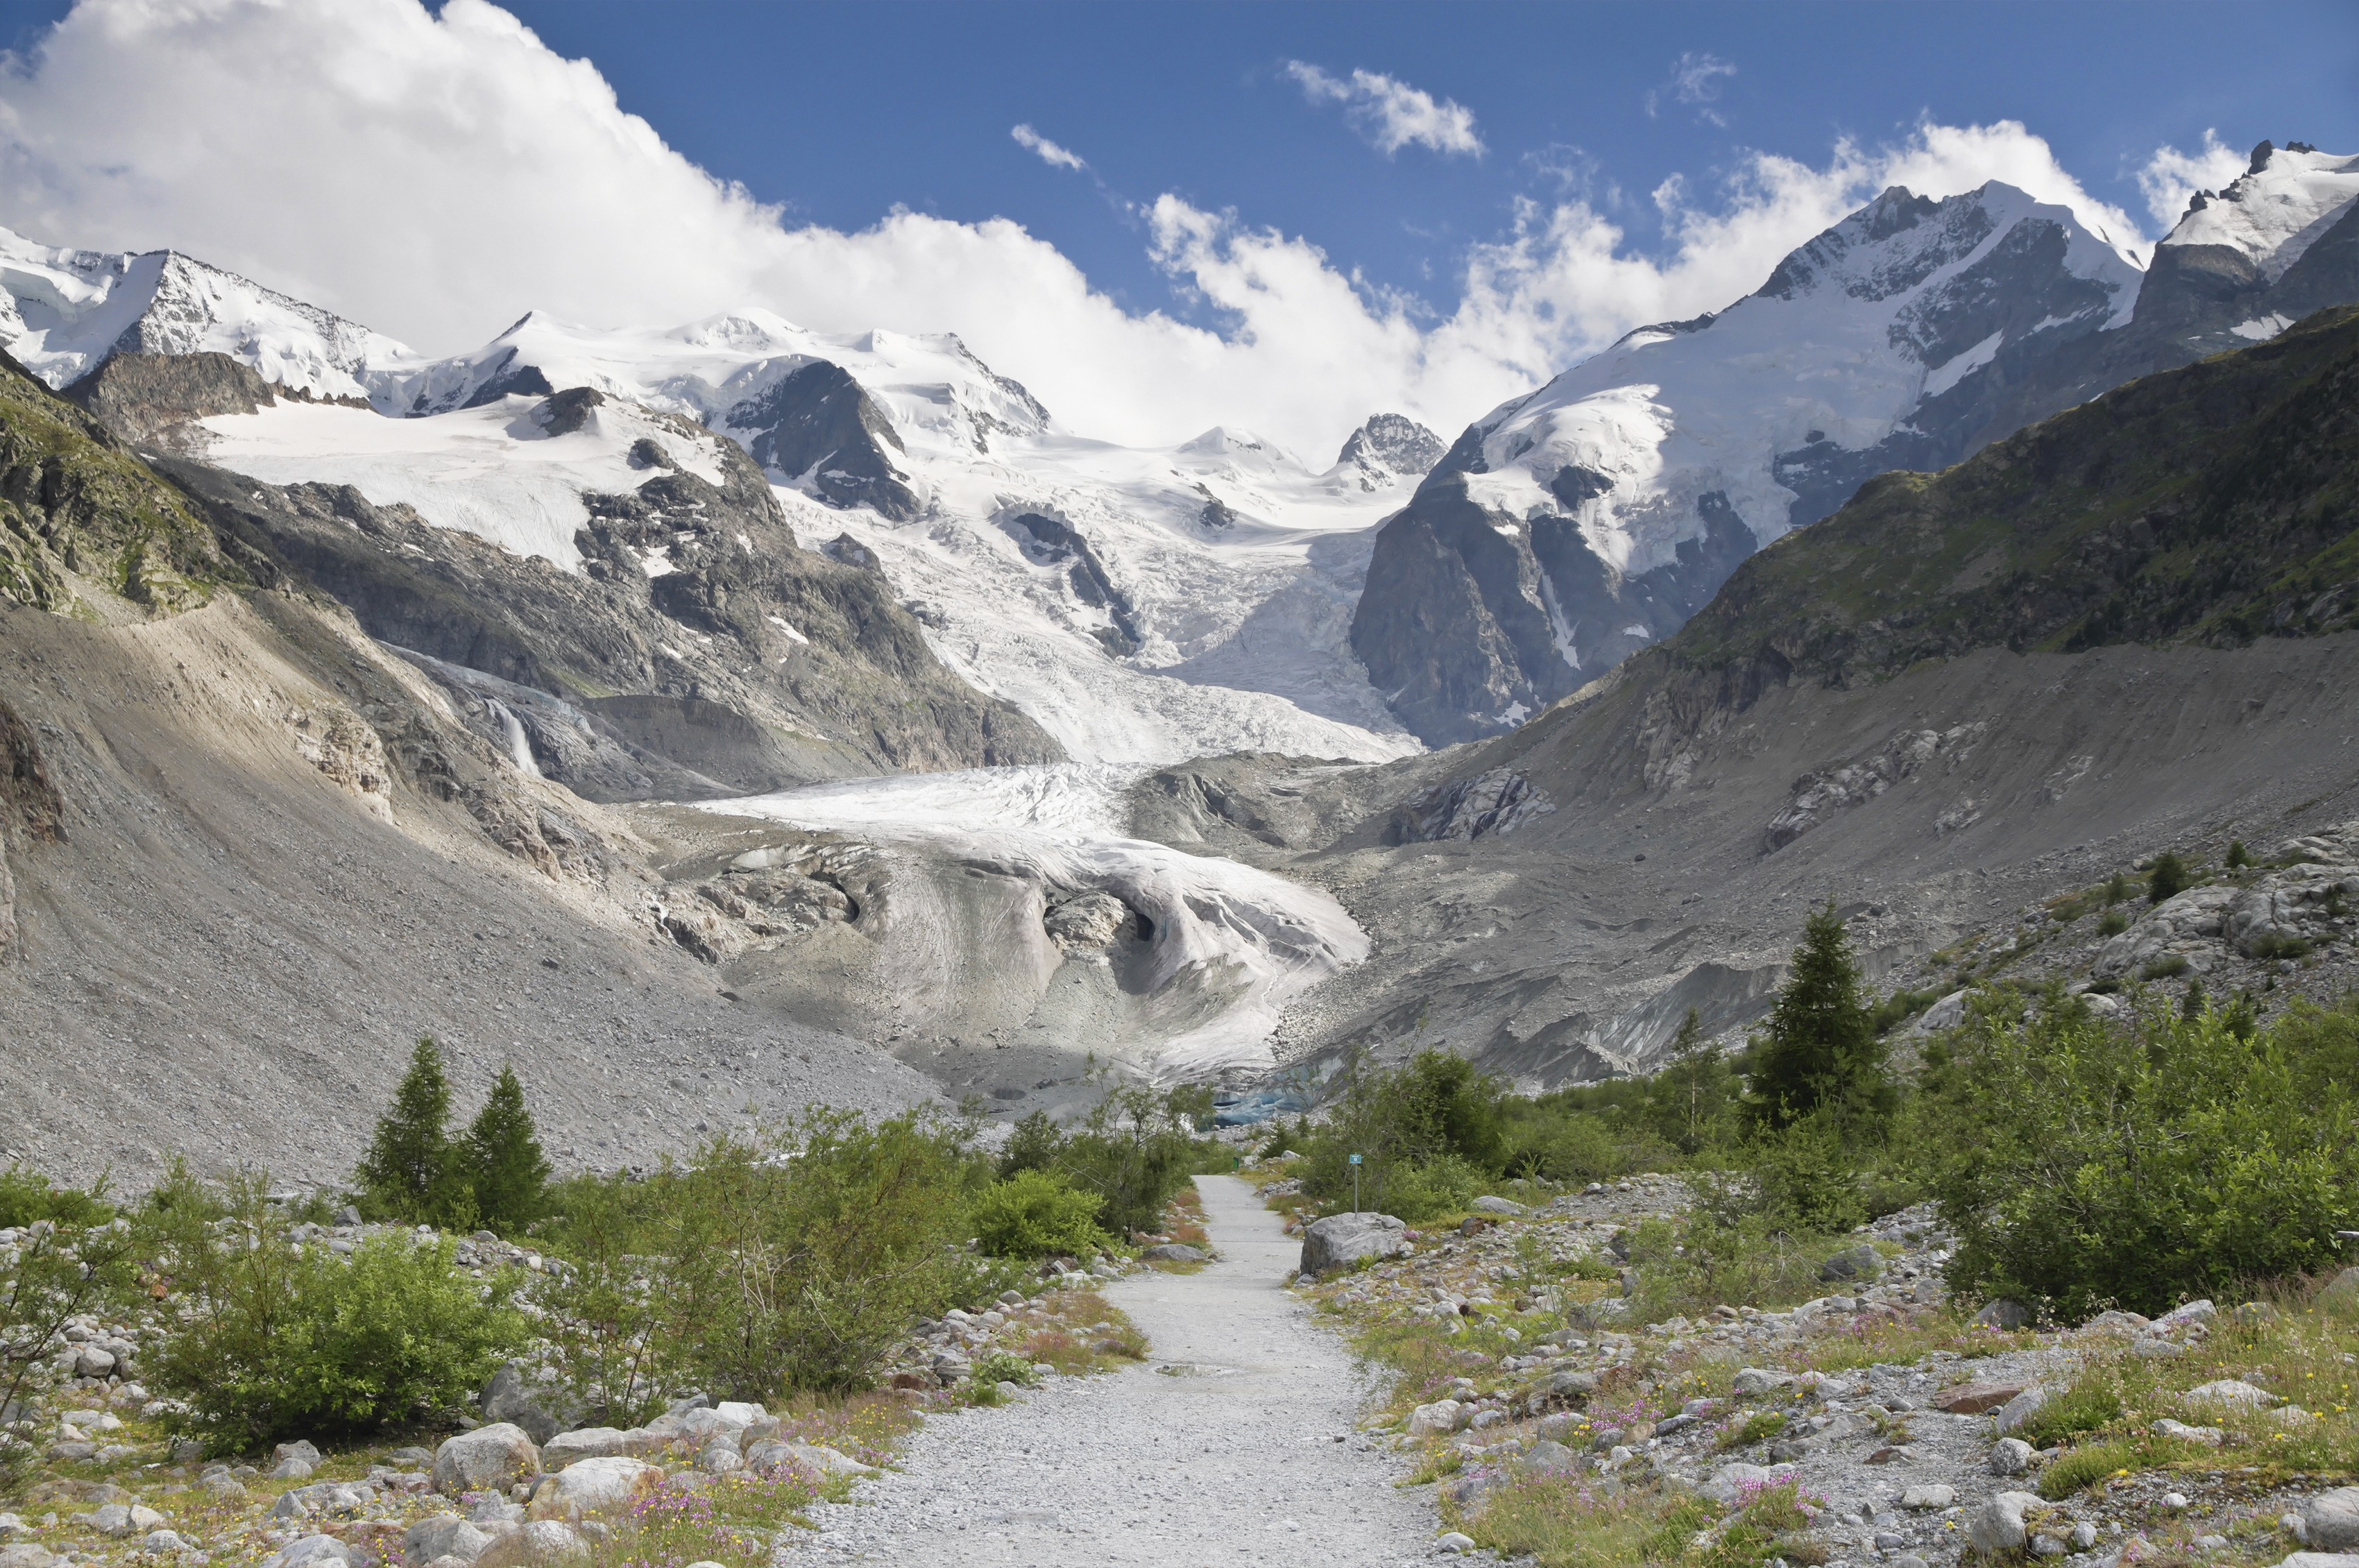 Trail to Morteratsch Glacier in 2012 July